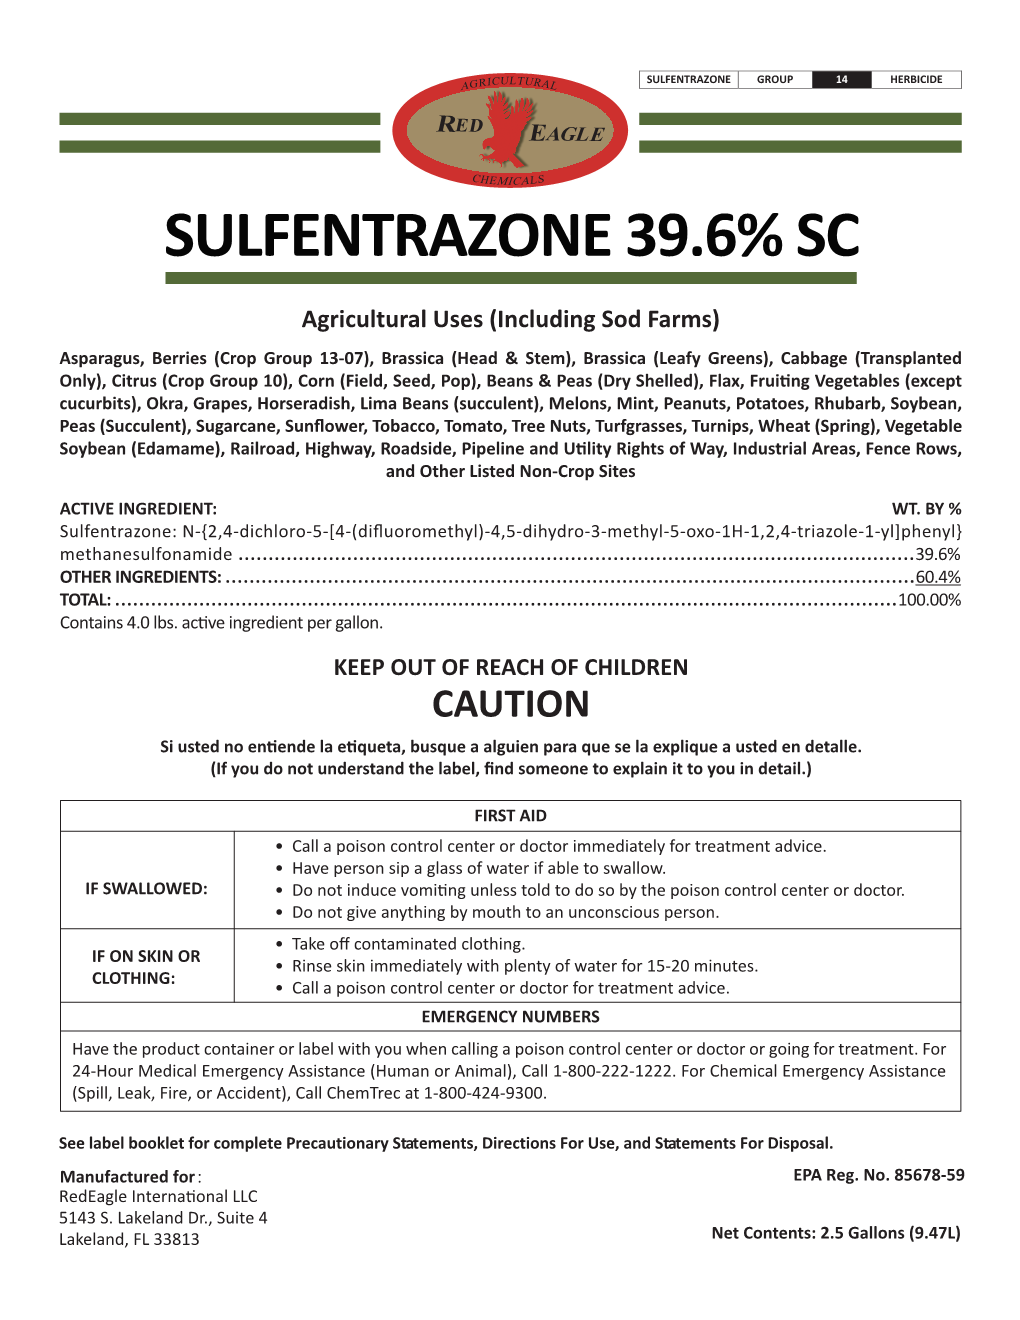 Sulfentrazone 39.6% Sc